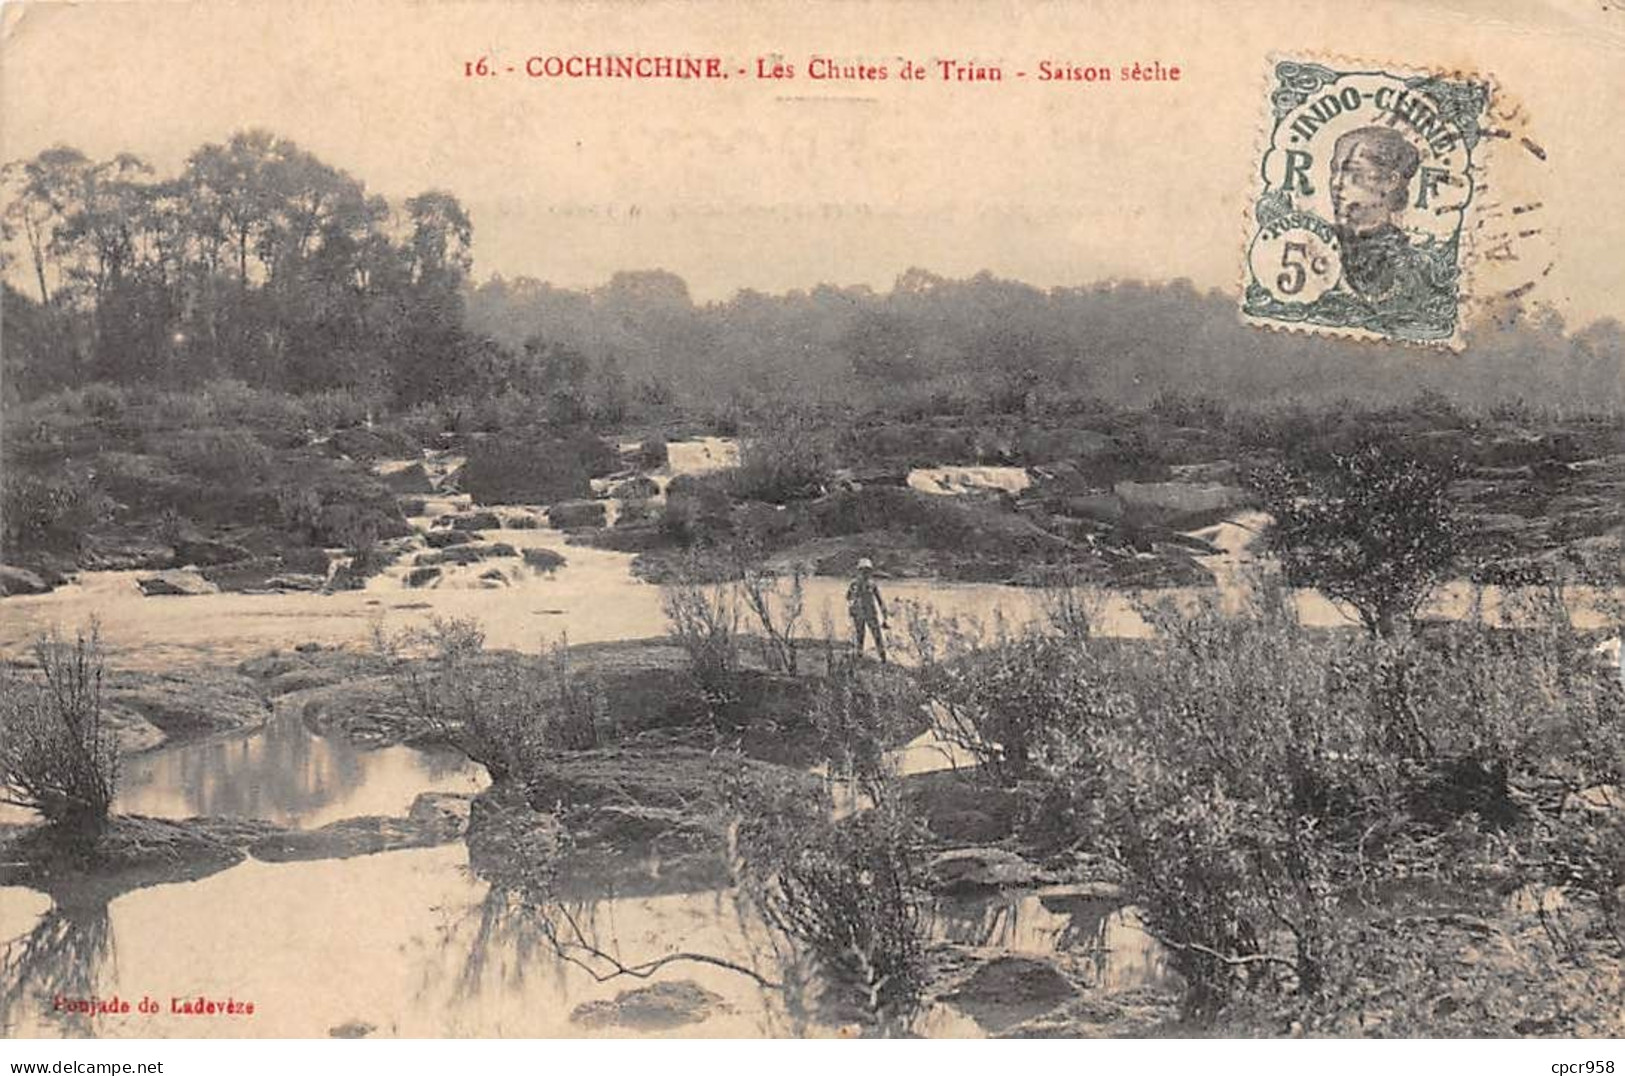 Viët-Nam - N°71712 - Cochinchine - Les Chutes De Trian - Saison Sèche - Viêt-Nam